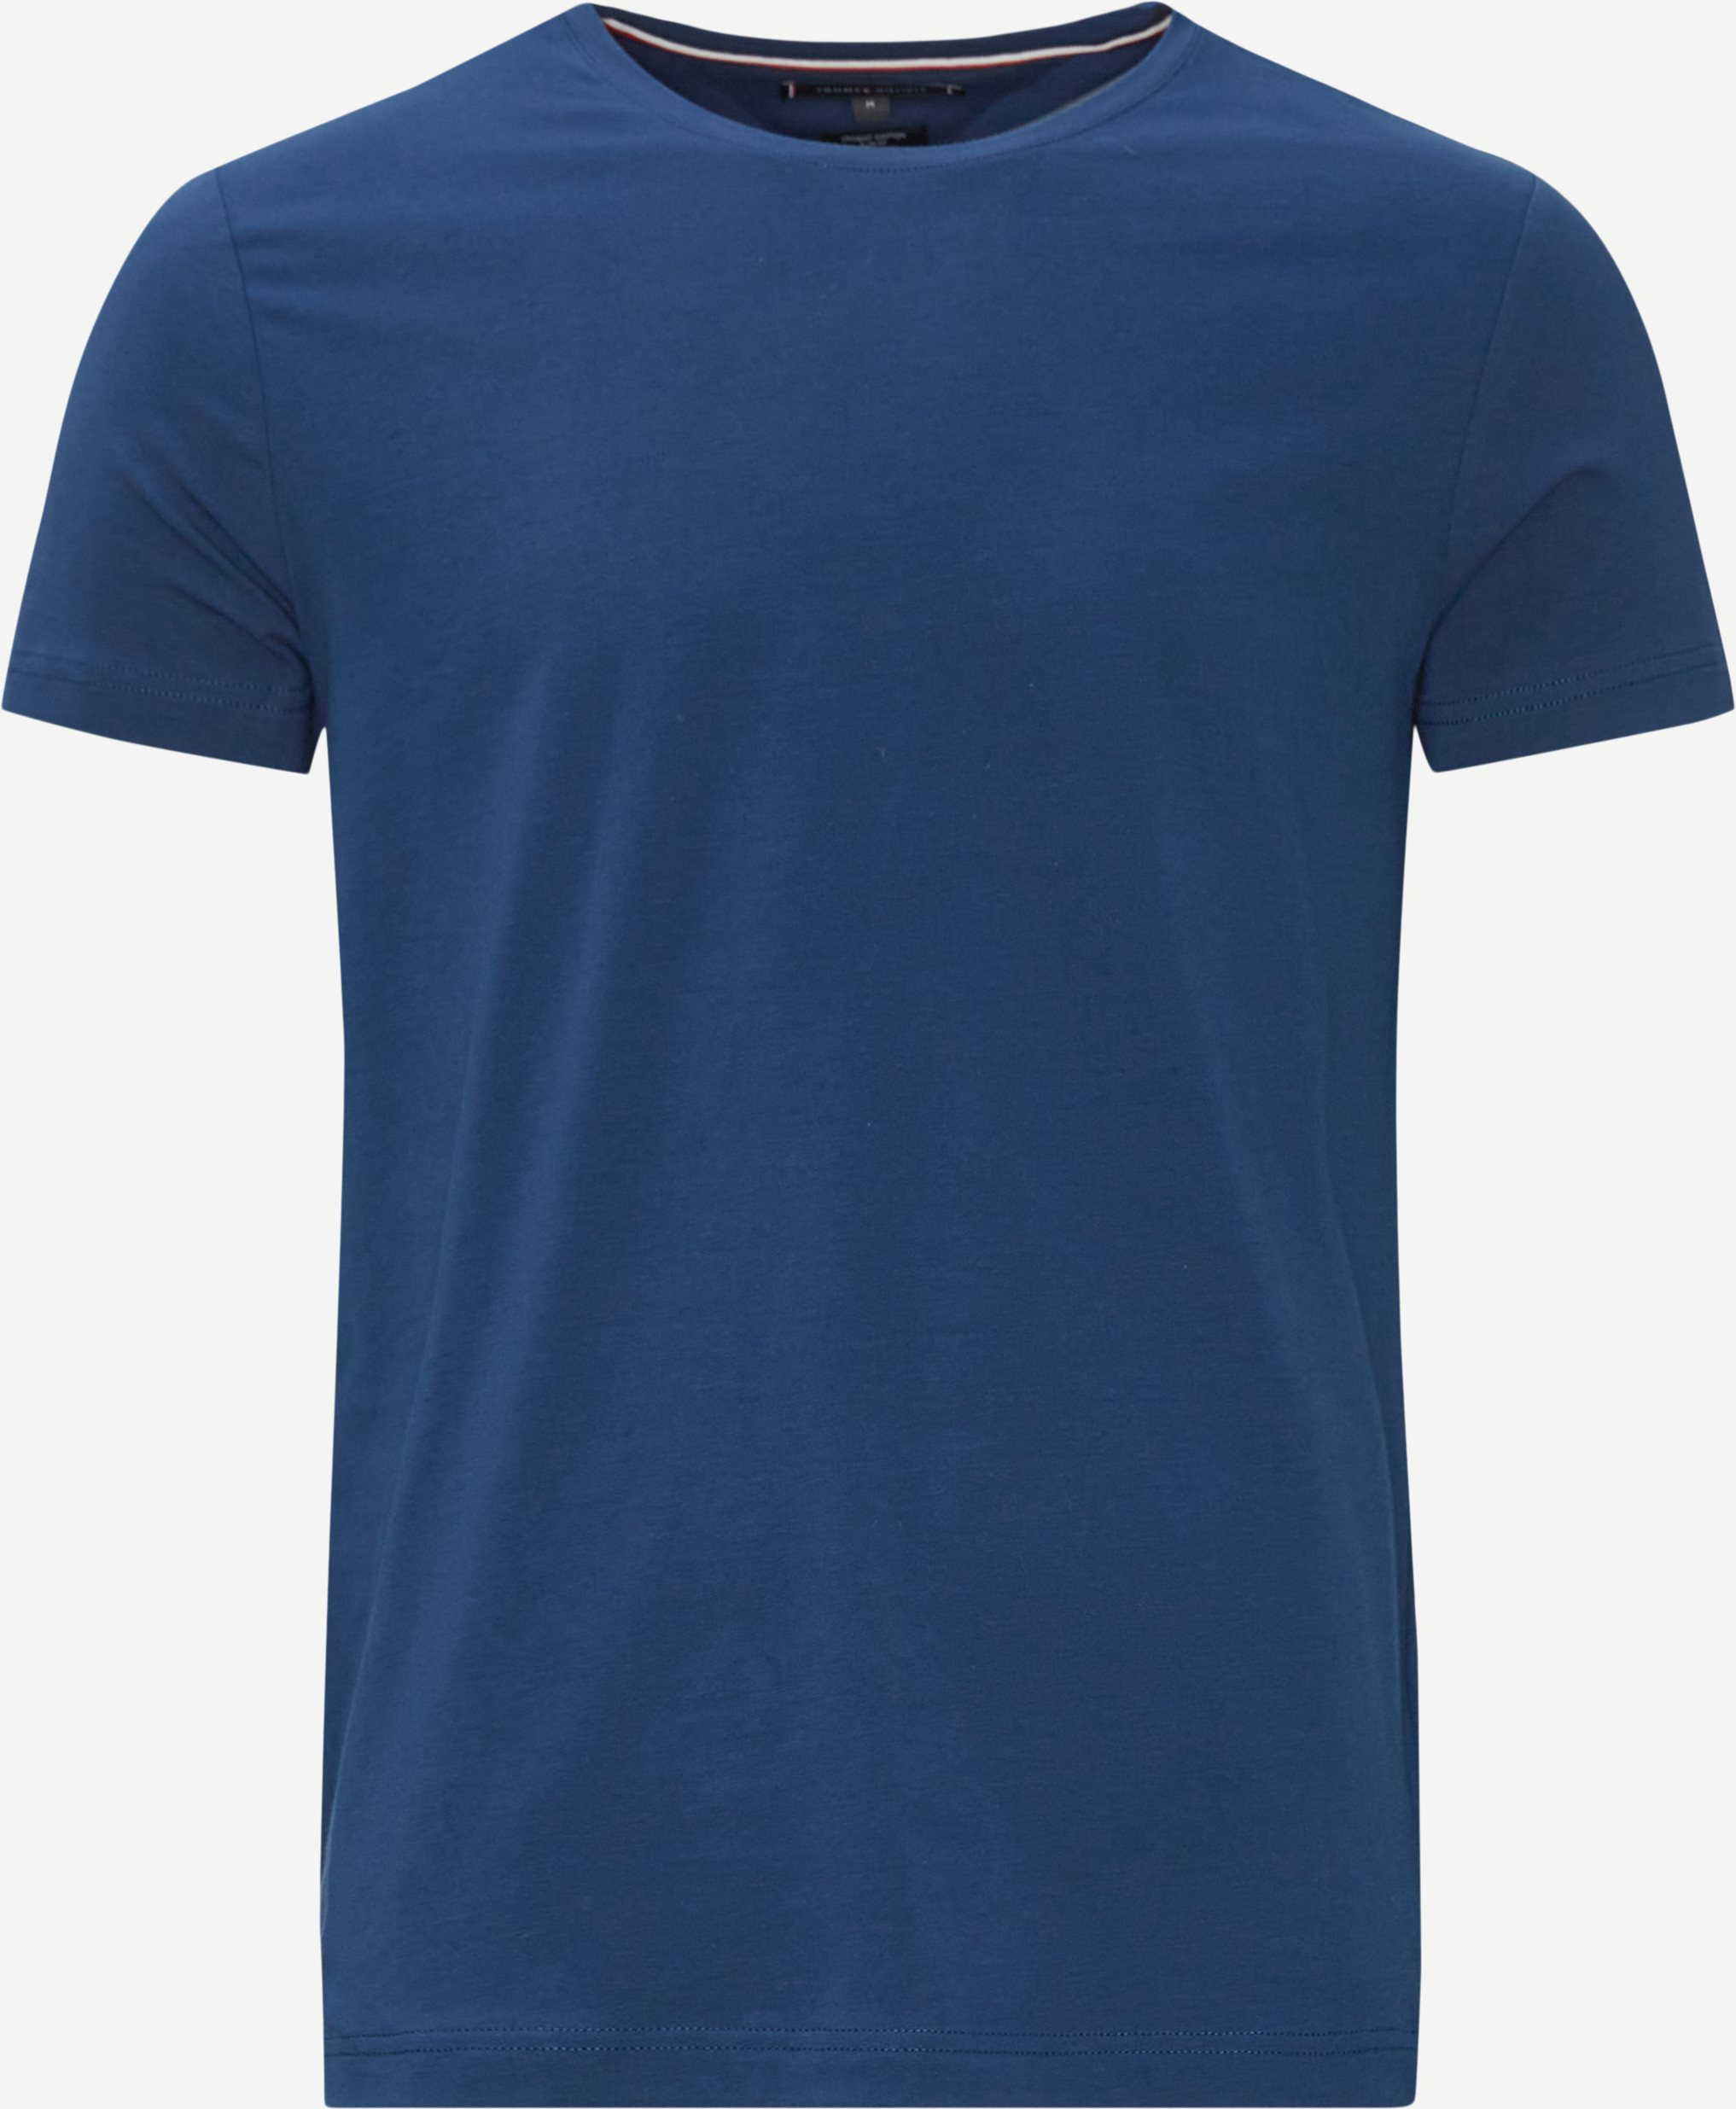 T-shirts - Slim fit - Blue